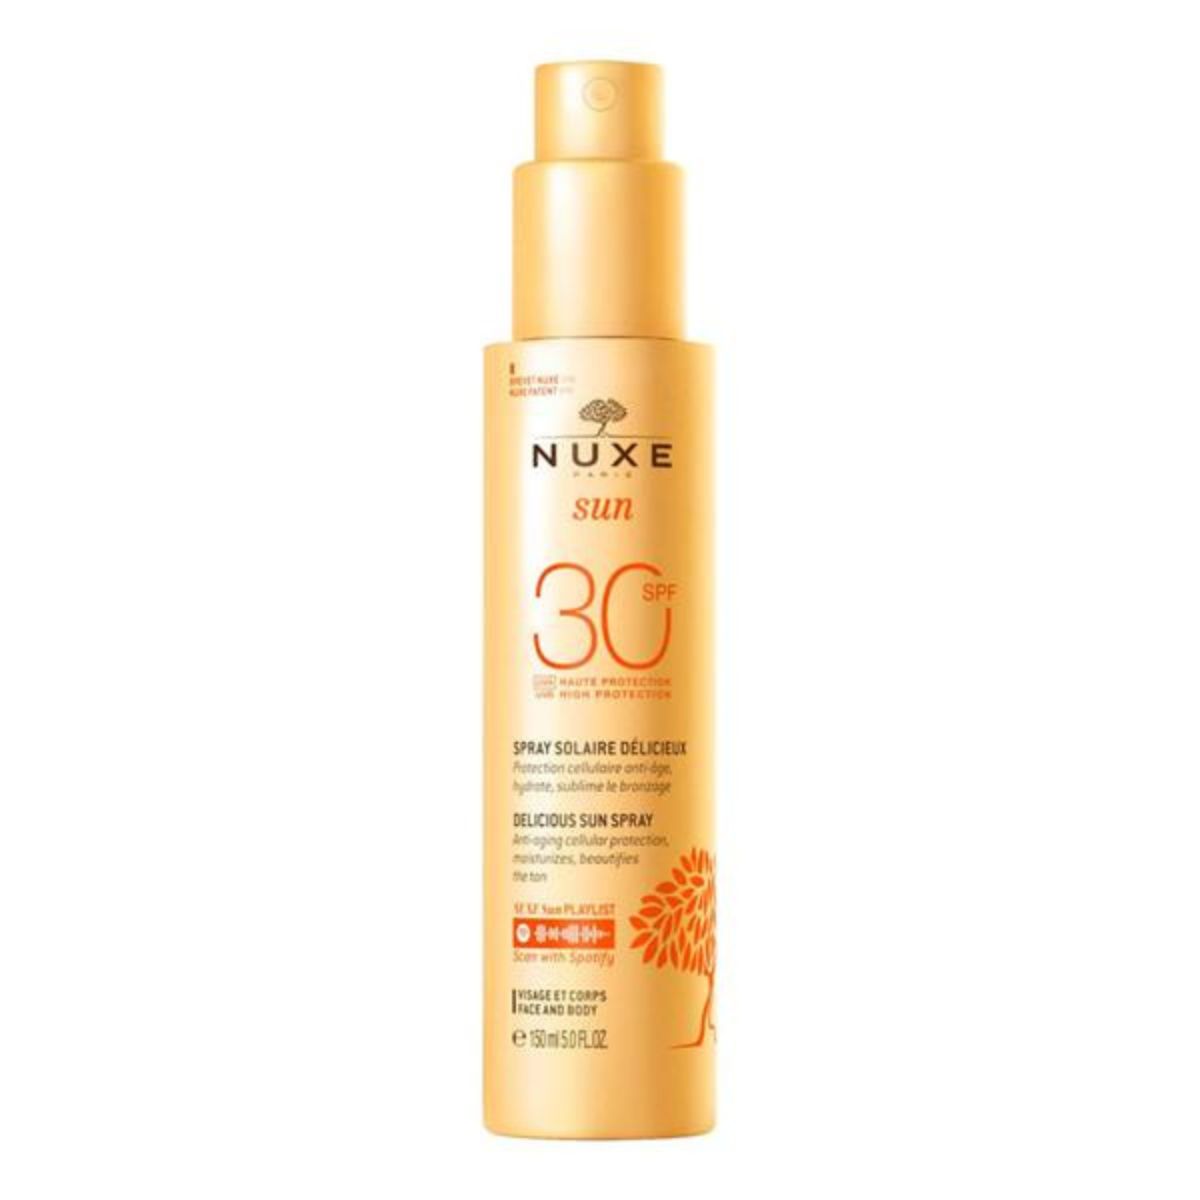 NUXE Sun Spray SPF30 High Protection Face & Body 150ml